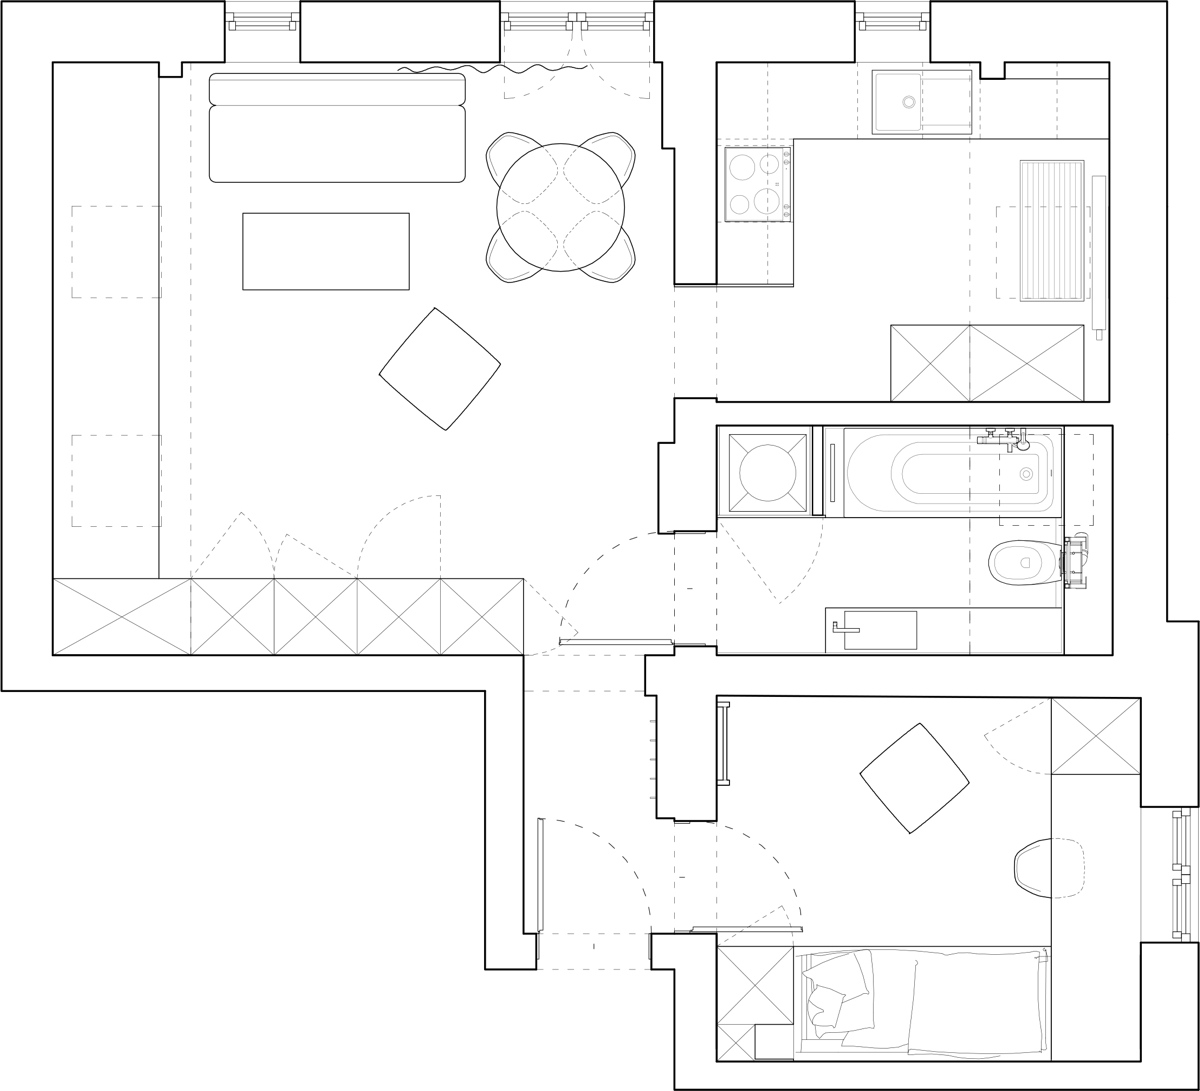 Bản vẽ kỹ thuật thiết kế nội thất thông minh cho căn hộ nhỏ tầng áp mái